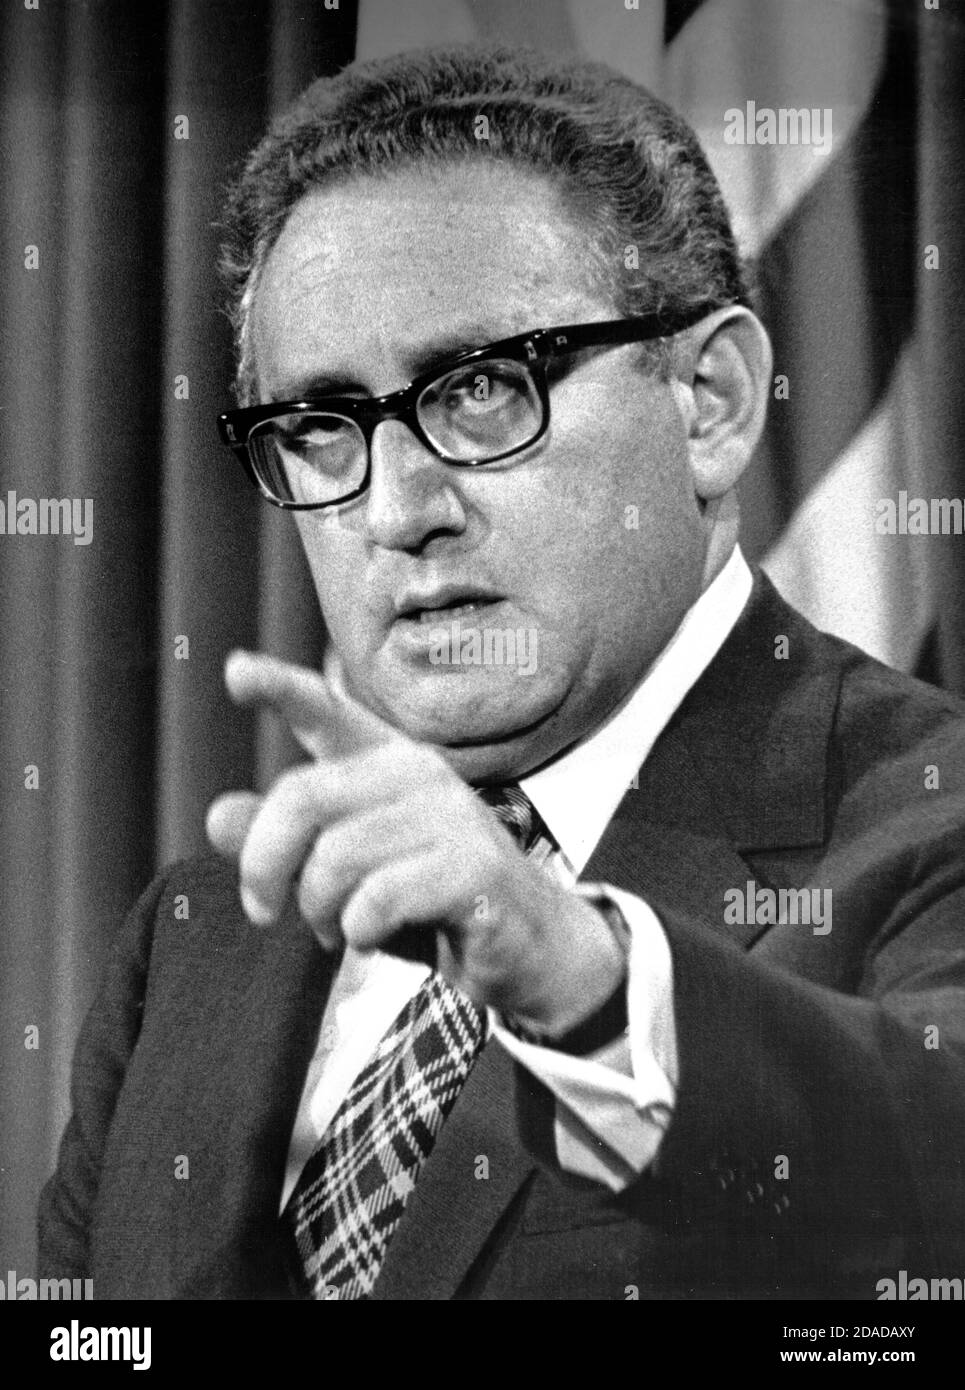 El Secretario de Estado de los Estados Unidos, Dr. Henry A. Kissinger, dirige una conferencia de prensa en la que anunció que la evacuación del personal de los Estados Unidos de Vietnam está completa y que la participación de los Estados Unidos en ese país había terminado, en el antiguo edificio de oficinas ejecutivas en Washington, DC el 29 de abril de 1975. Kissinger retrasó su anuncio hasta que el último americano fue sacado por aire de Saigón. El Secretario reiteró que los EE.UU. Respetarán todos sus compromisos en todo el mundo.crédito: Benjamin E. 'Gene' Forte/CNP | uso en todo el mundo Foto de stock